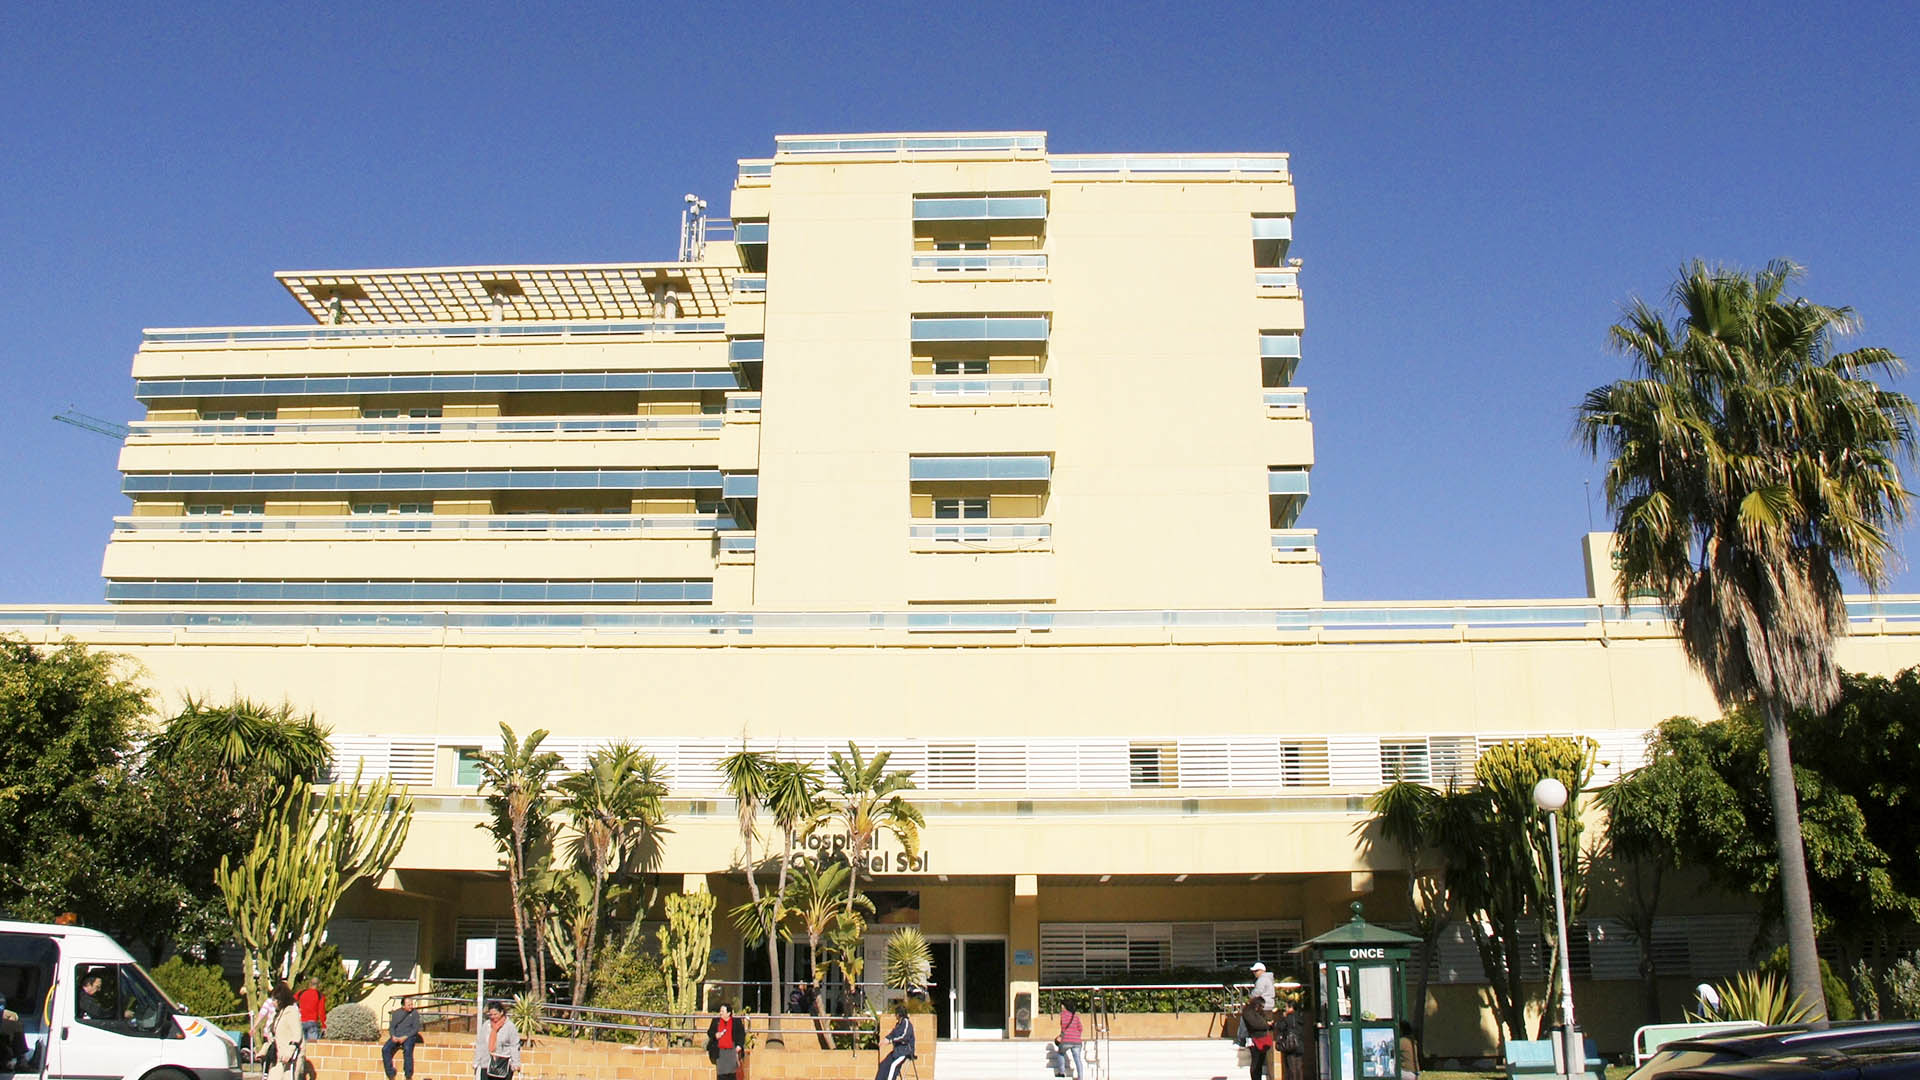 Por fin conceden licencia de obras para ampliar el Hospital Costa del Sol